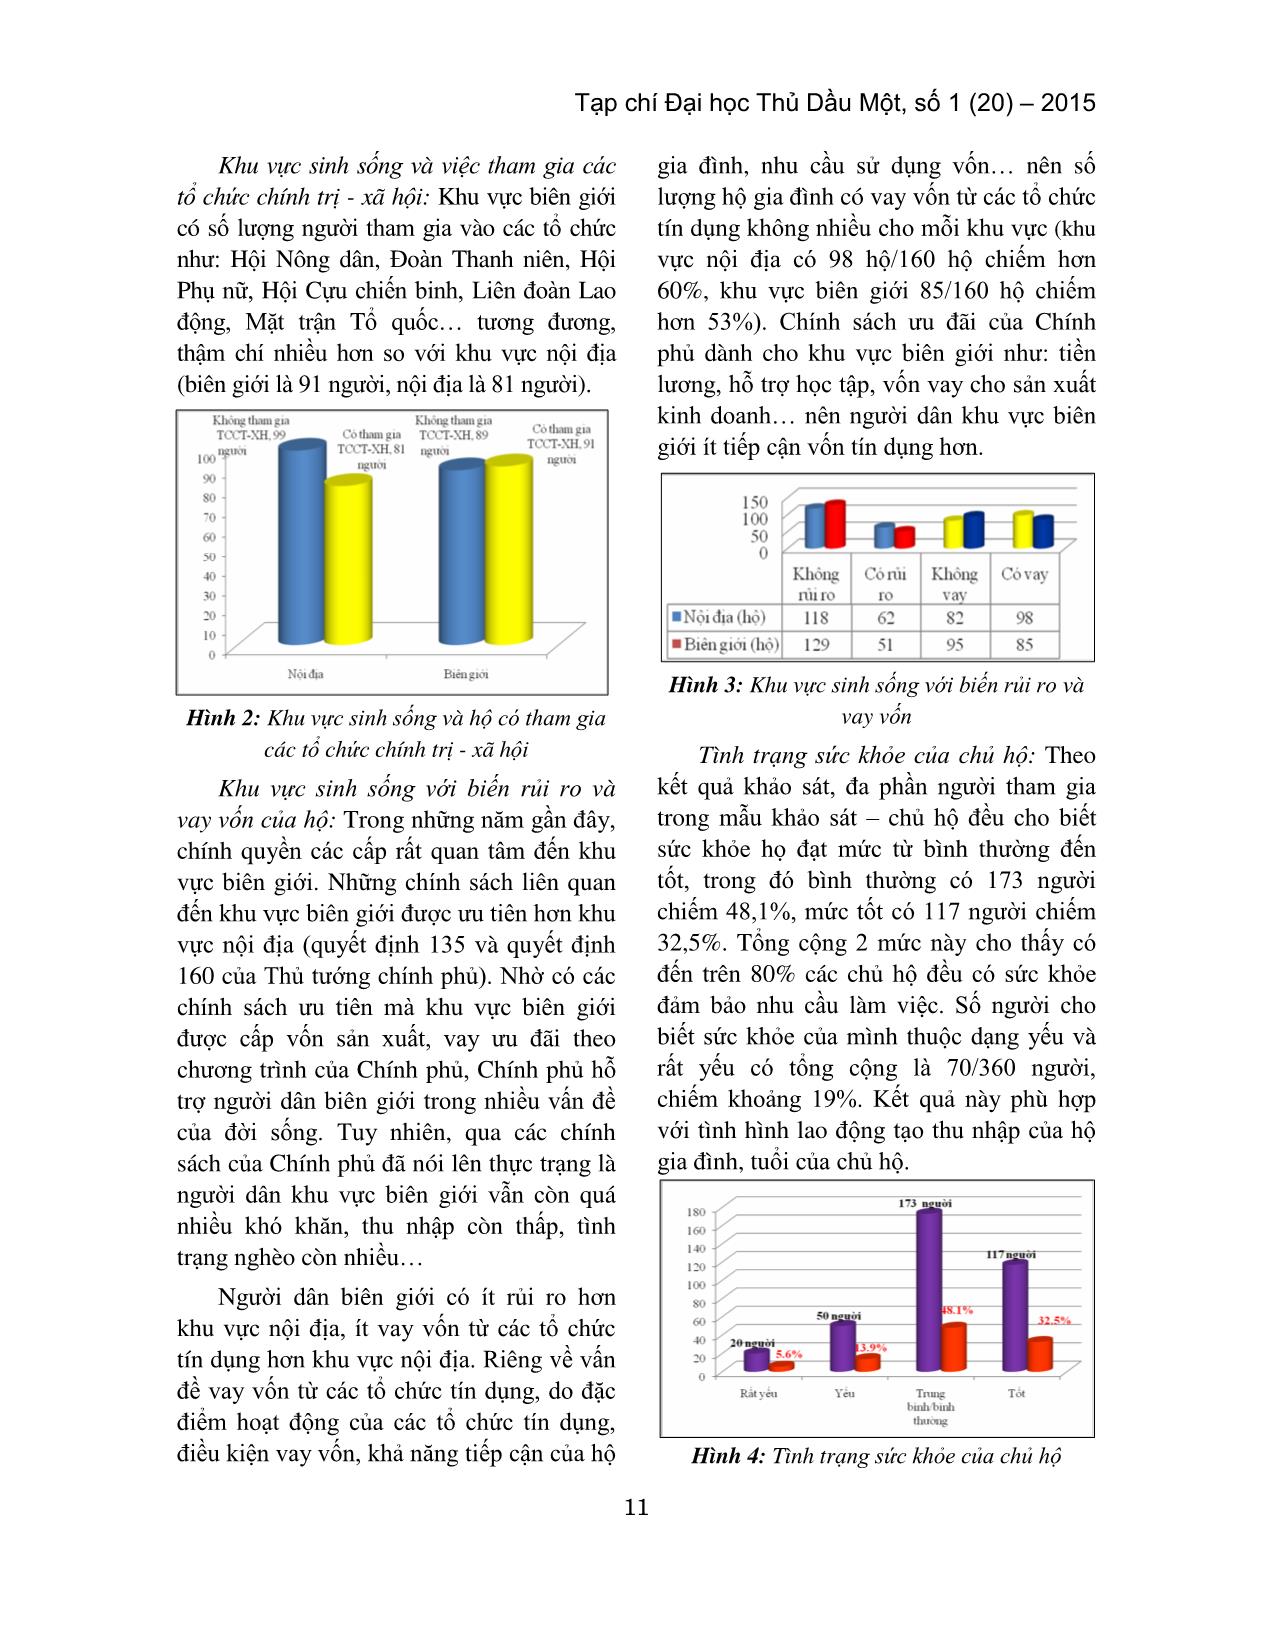 Phân tích thu nhập của hộ gia đình khu vực Đồng Tháp Mười, tỉnh Long An trang 3